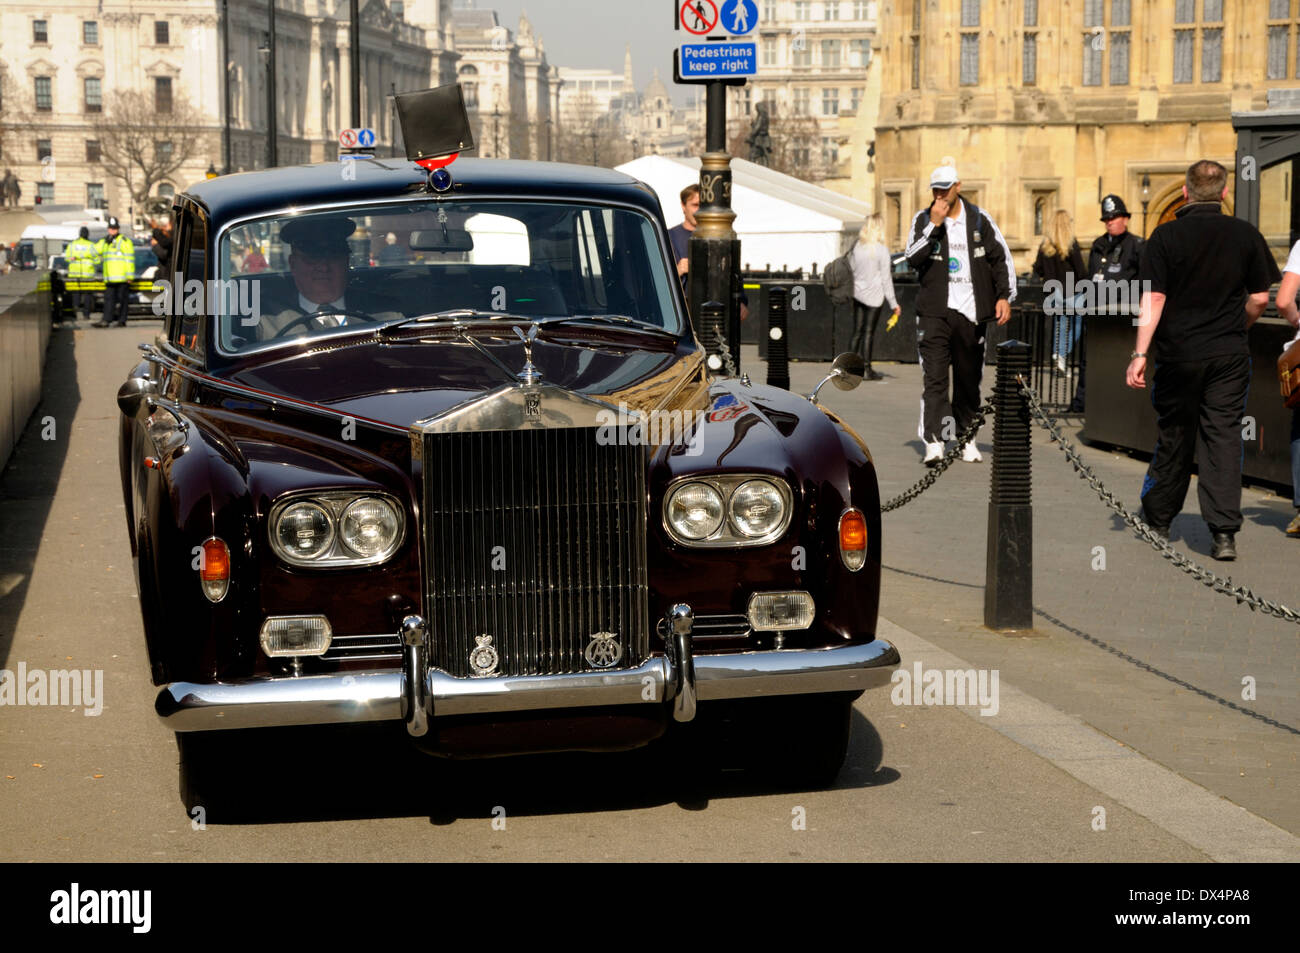 Londra, Inghilterra, Regno Unito. Royal Rolls Royce Phantom vi attende al di fuori della sede del Parlamento; numero di targa e insegne regali nascosti Foto Stock